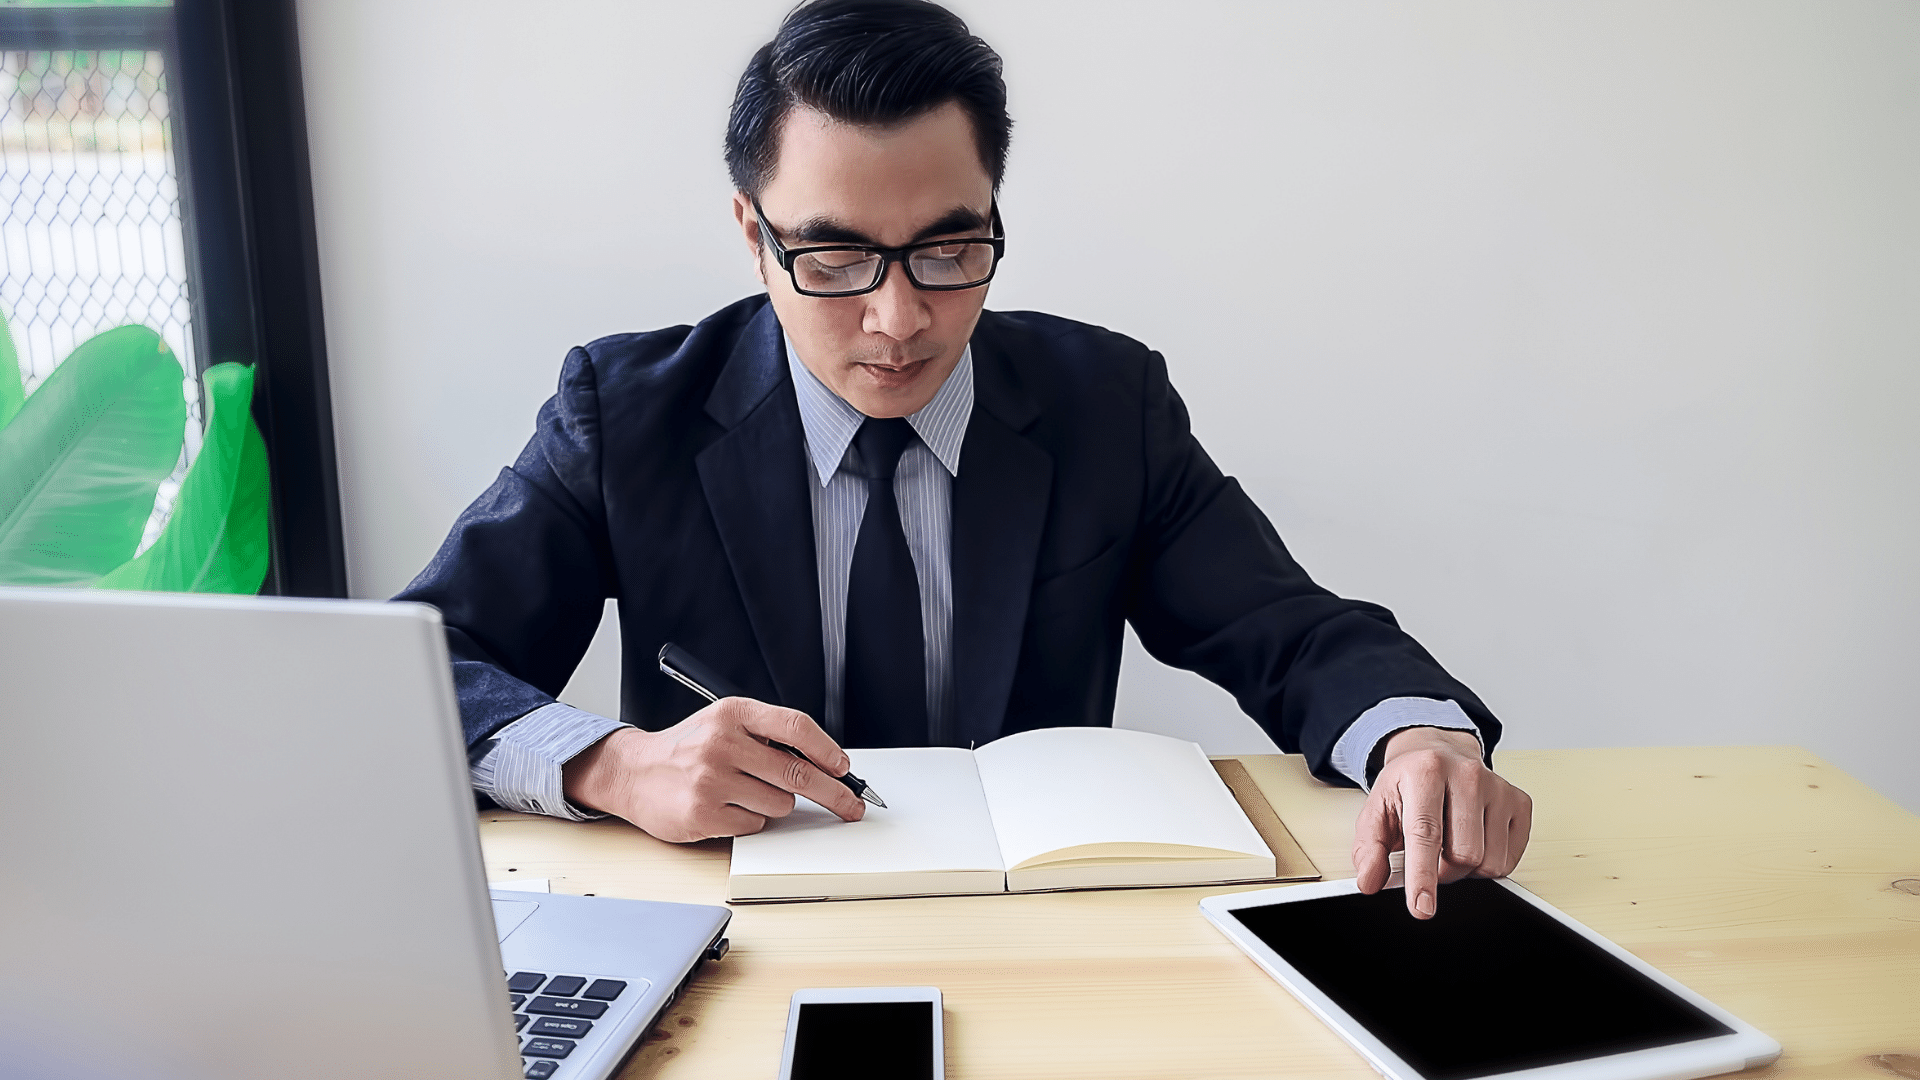 Imagem de um empresário em seu escritório com um Tablet e fazendo anotações.